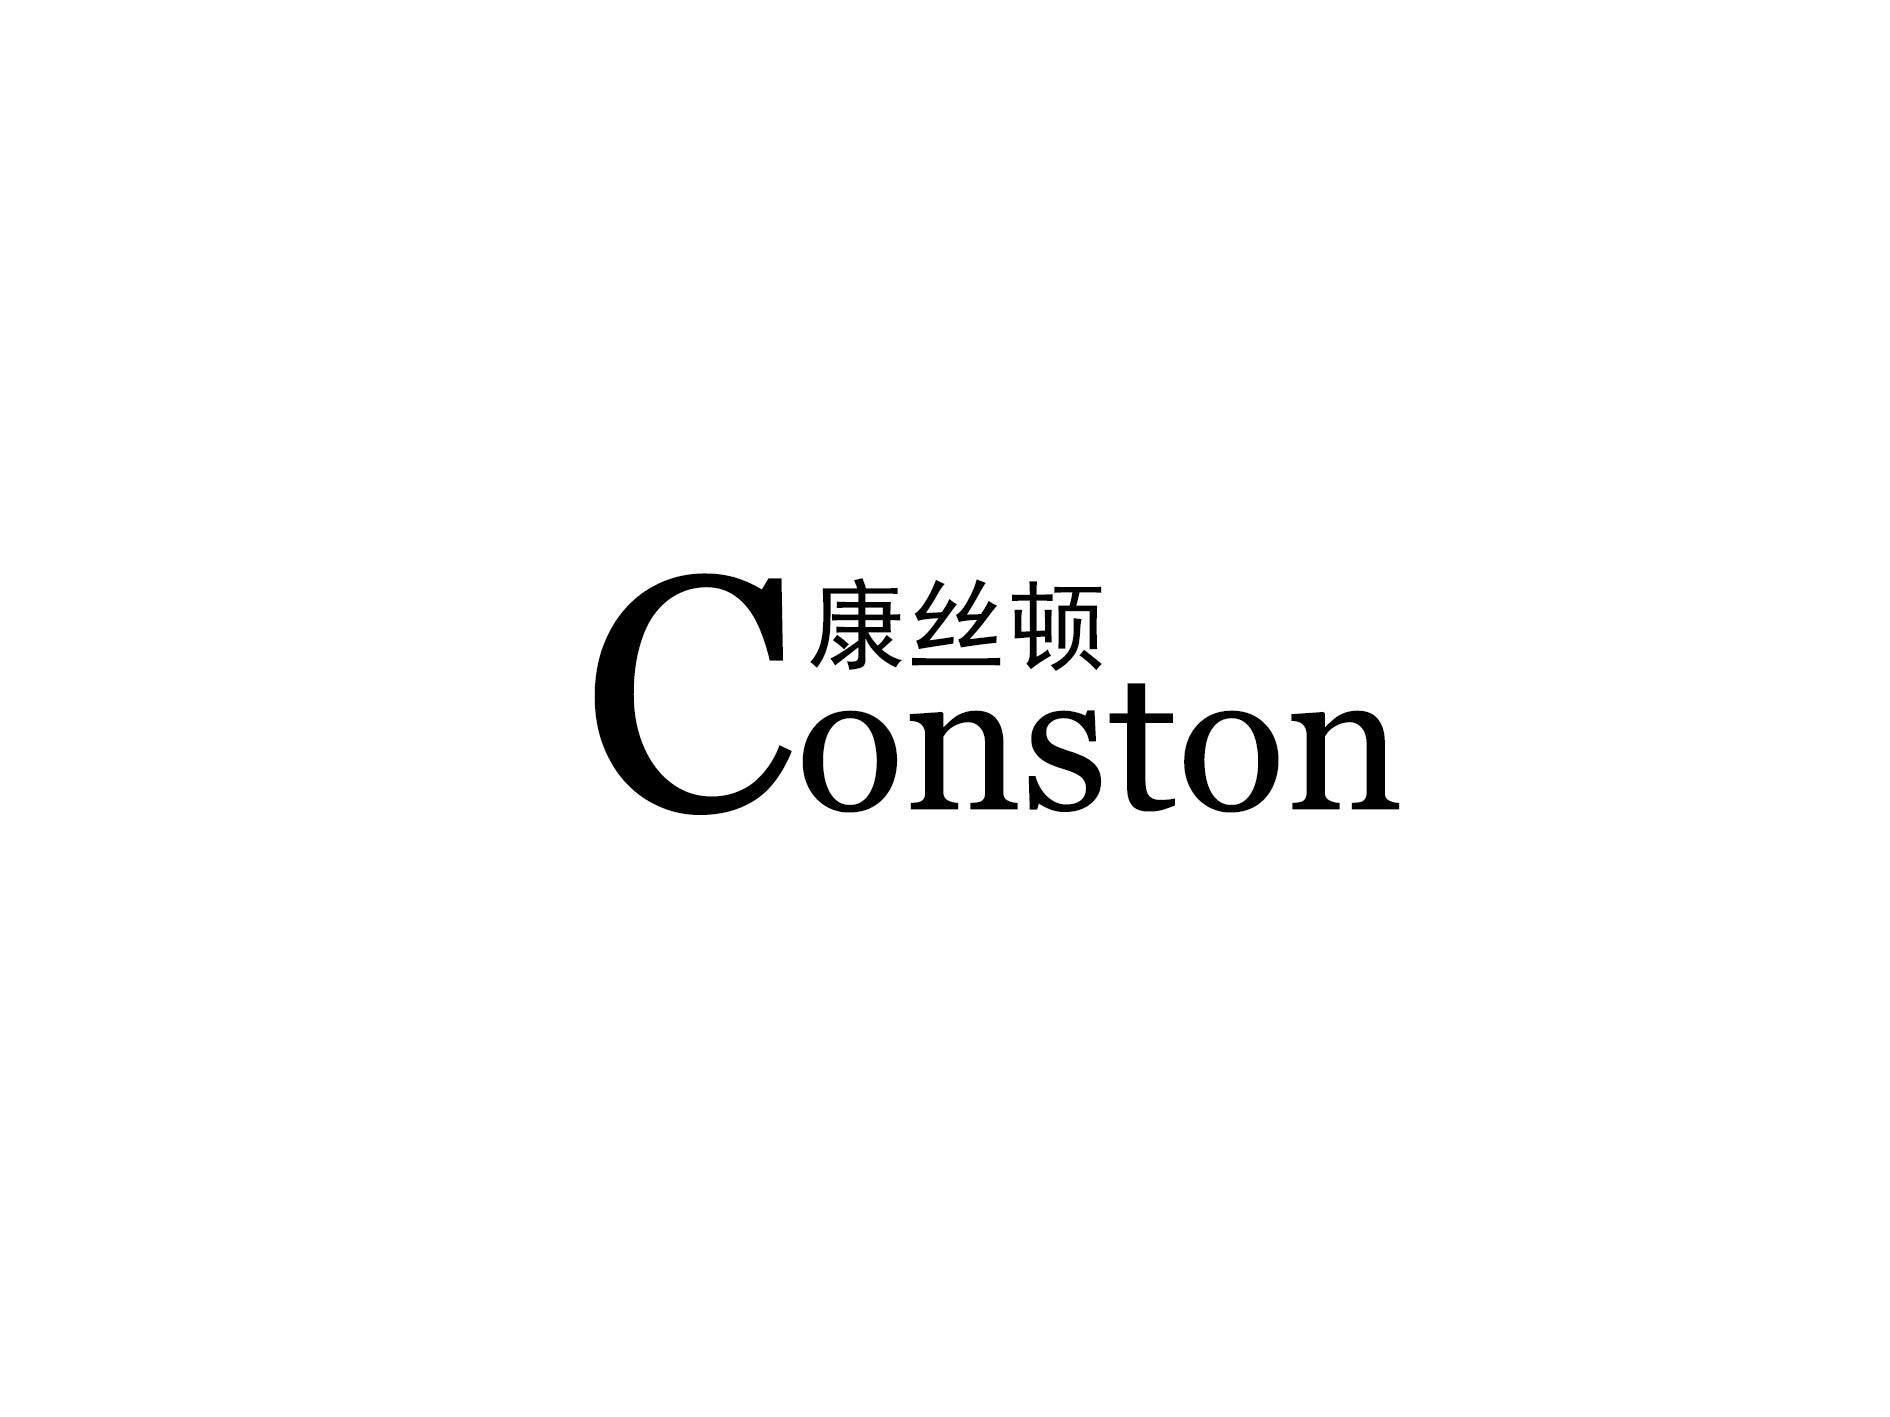 27类-墙纸毯席康丝顿 CONSTON商标转让